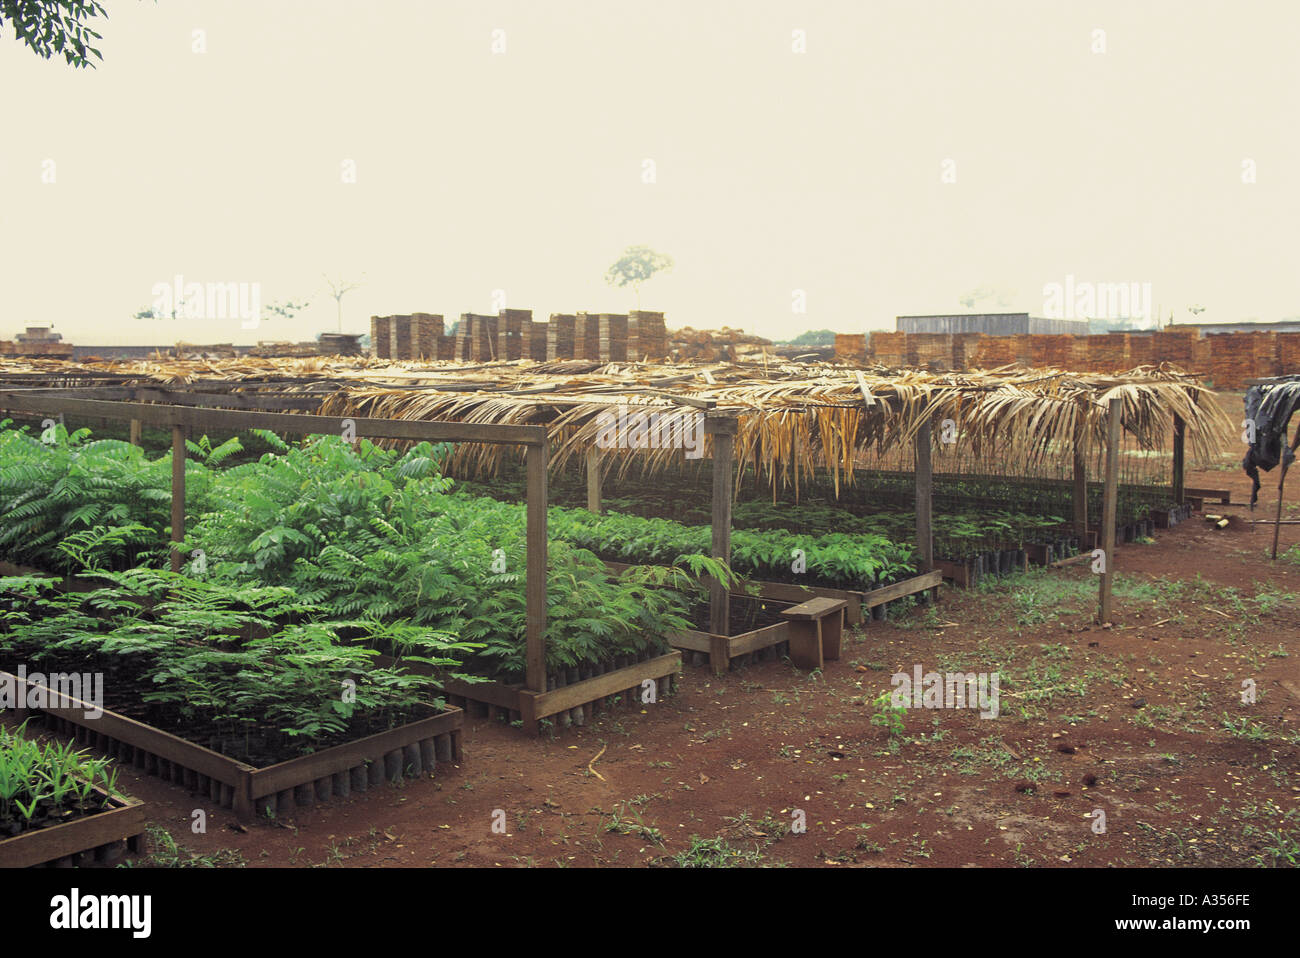 Juruena Brazil Nursery of seedlings for reforestation of rainforest land Stock Photo